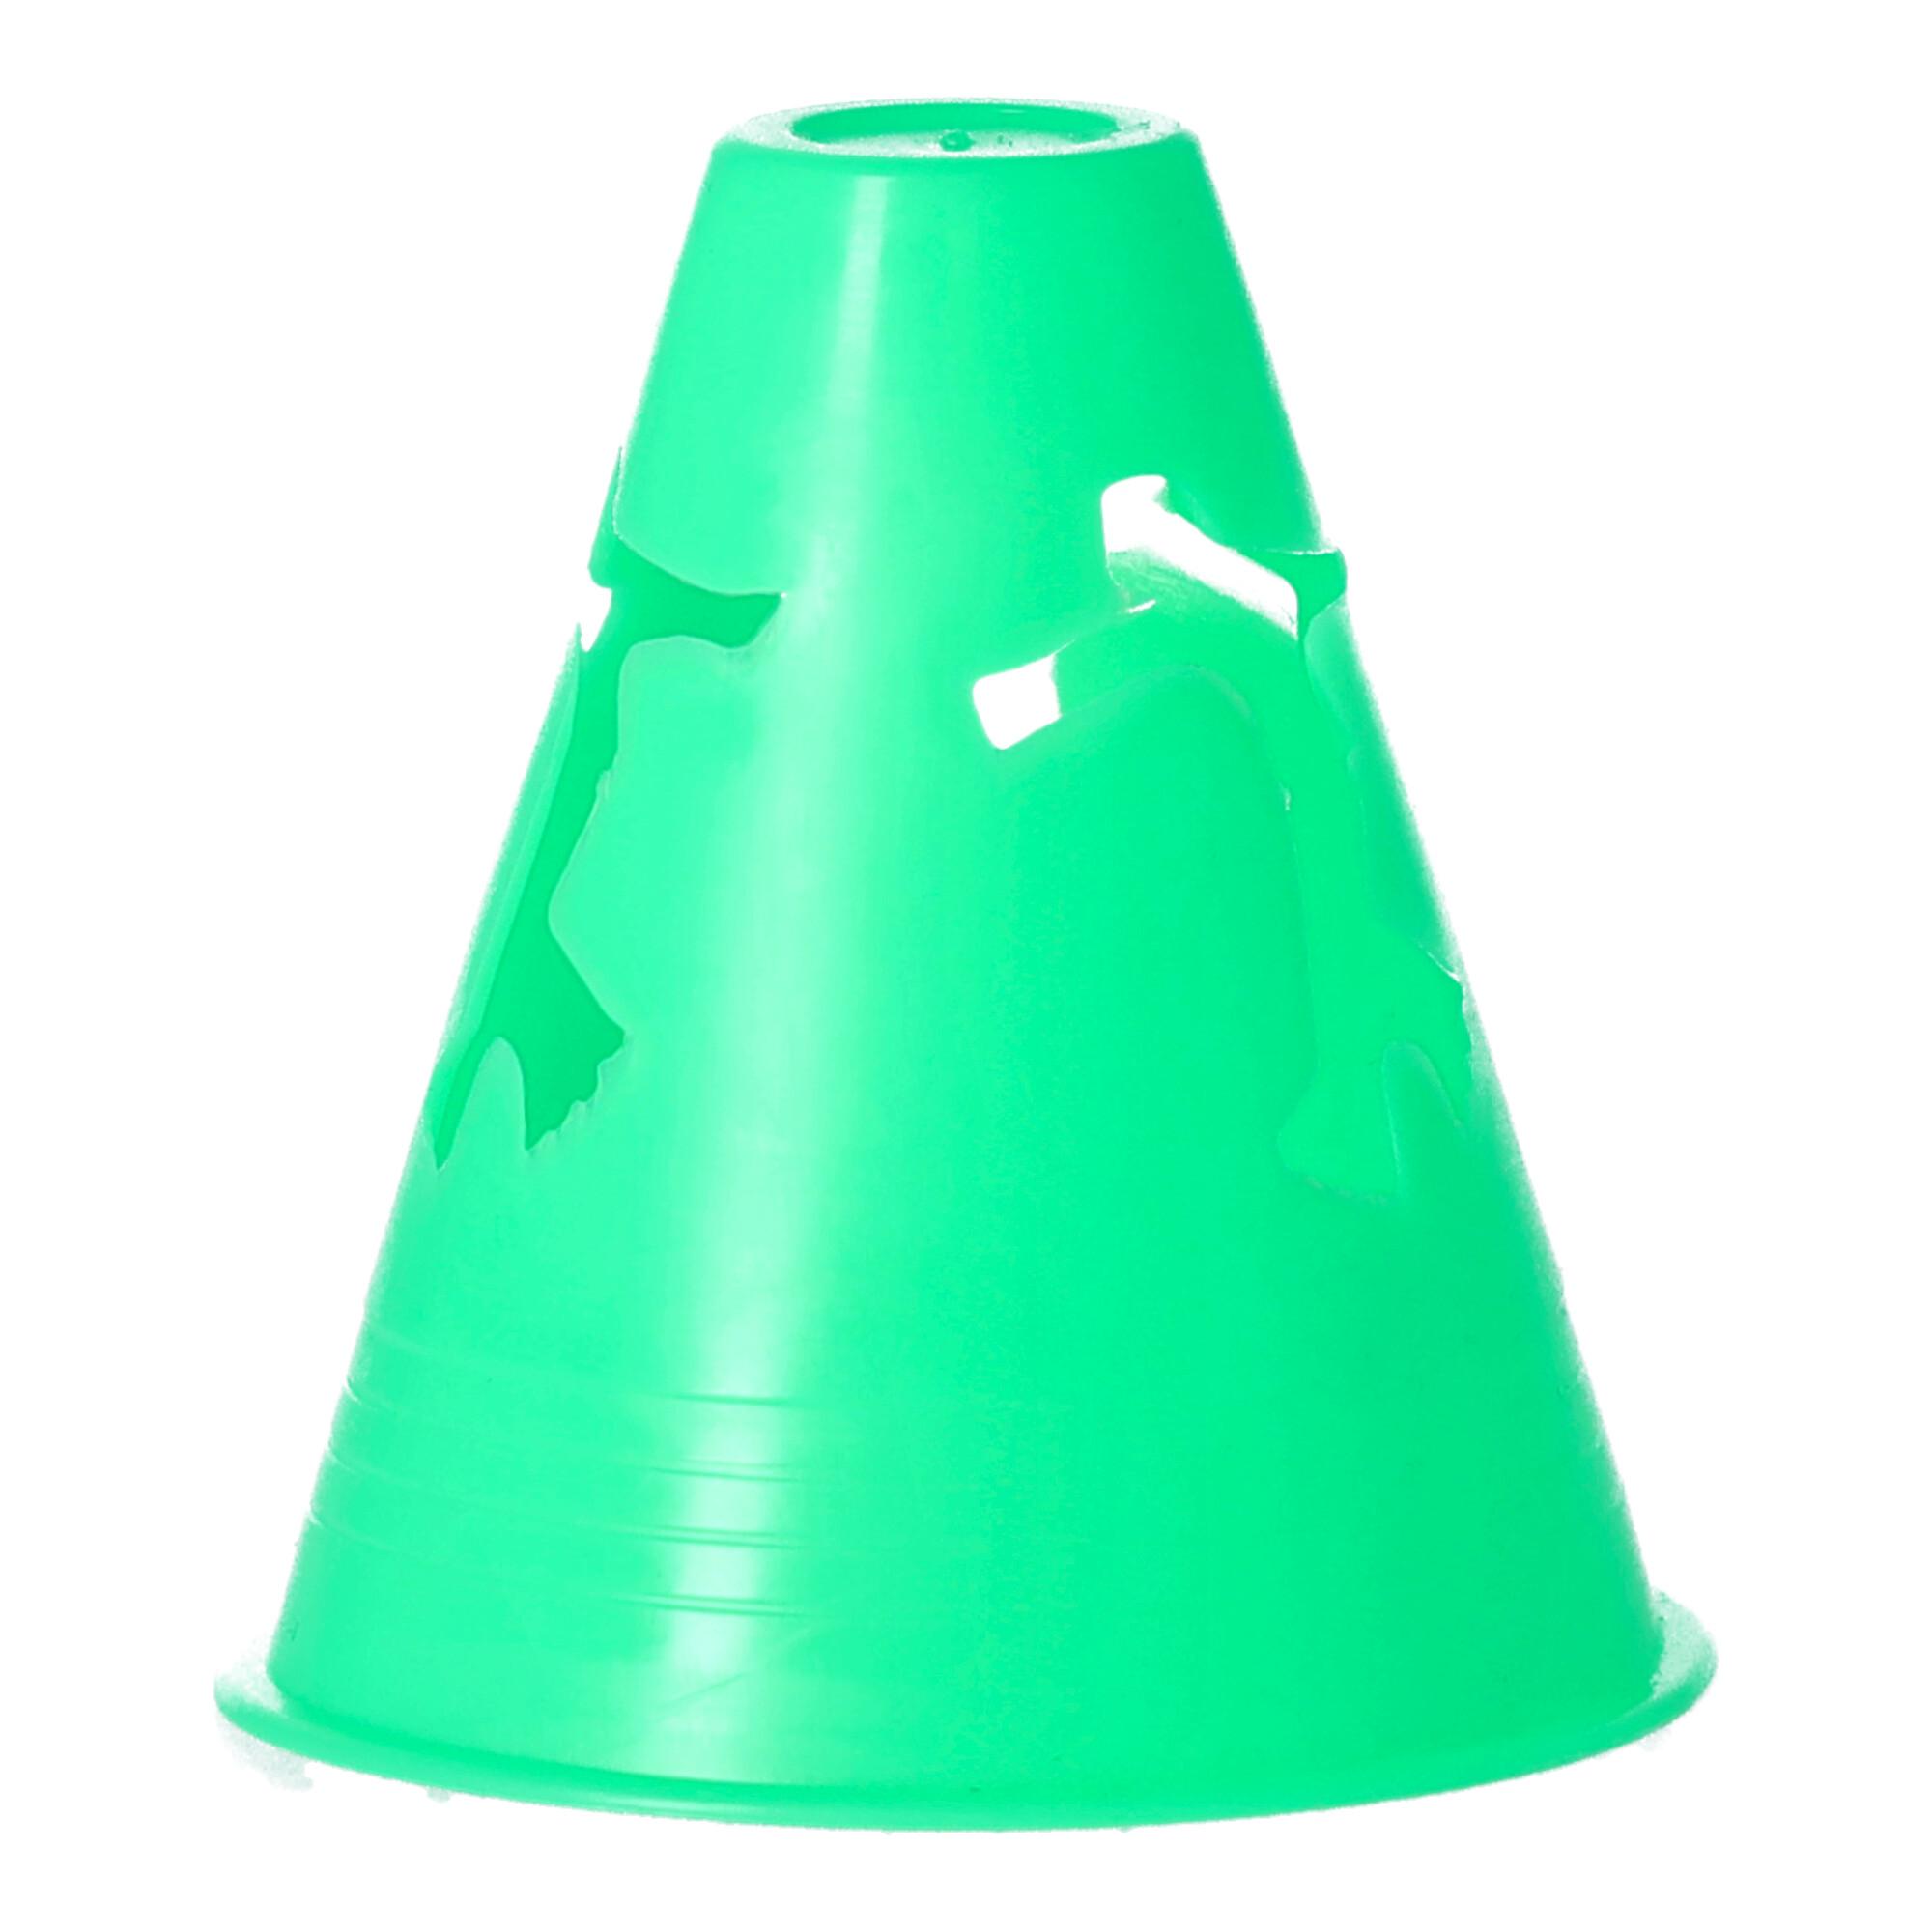 Slalom cones - green